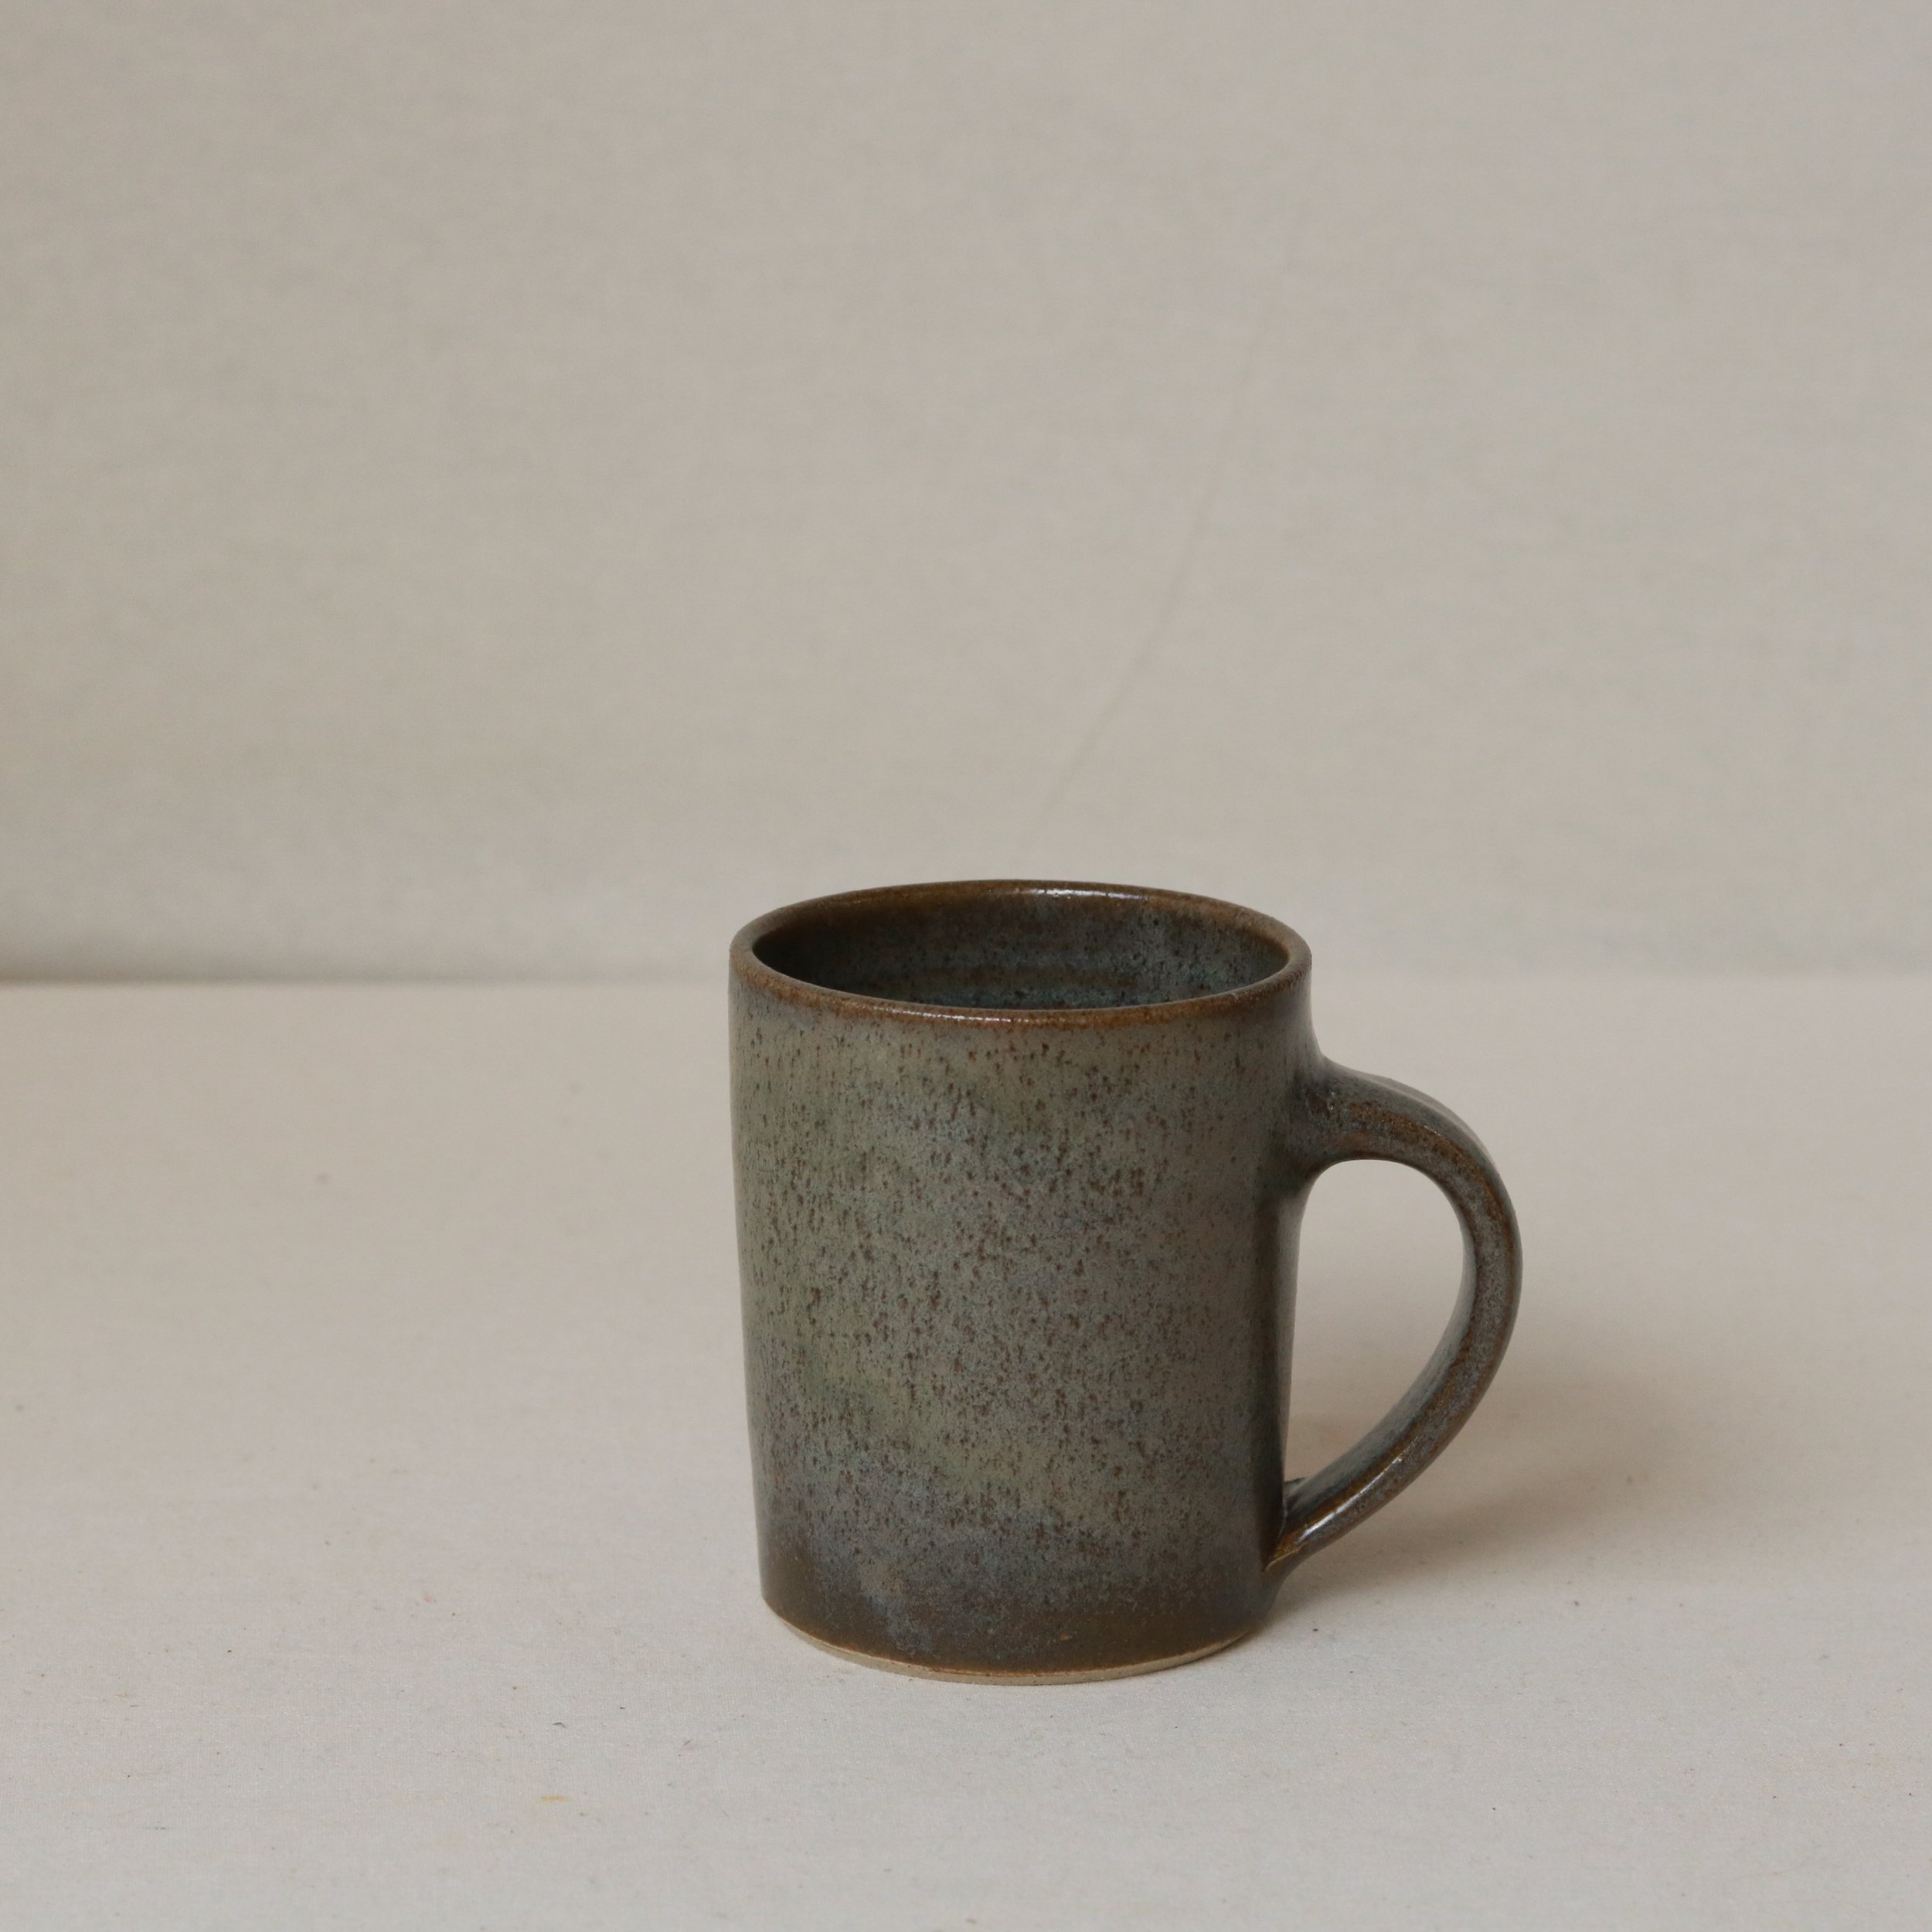 250ml Tapered Mug in Nori, Flecked Stoneware-3.jpg